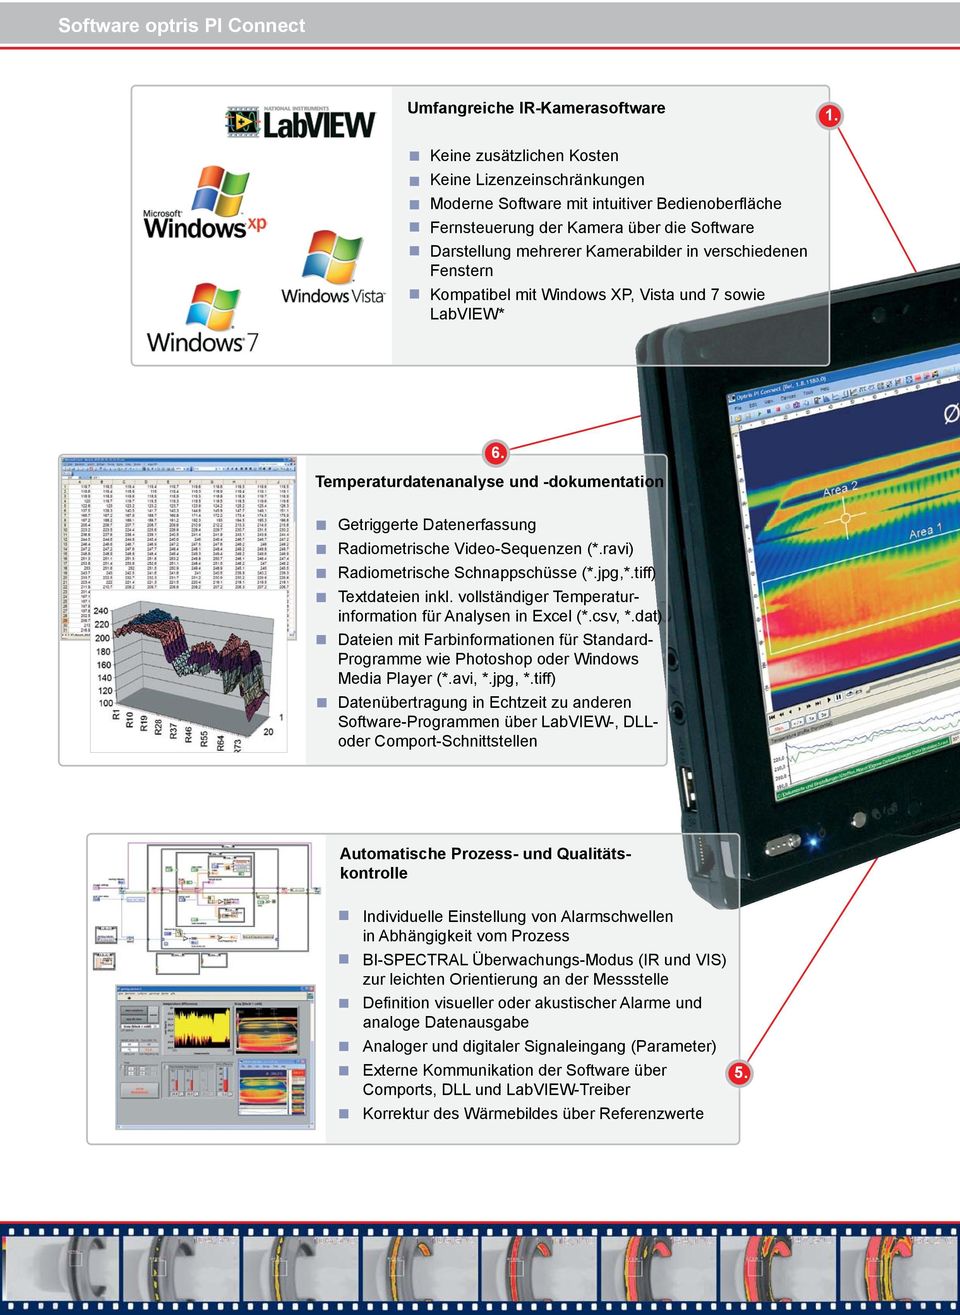 Fenstern Kompatibel mit Windows XP, Vista und 7 sowie LabVIEW* 6. Temperaturdatenanalyse und -dokumentation Getriggerte Datenerfassung Radiometrische Video-Sequenzen (*.